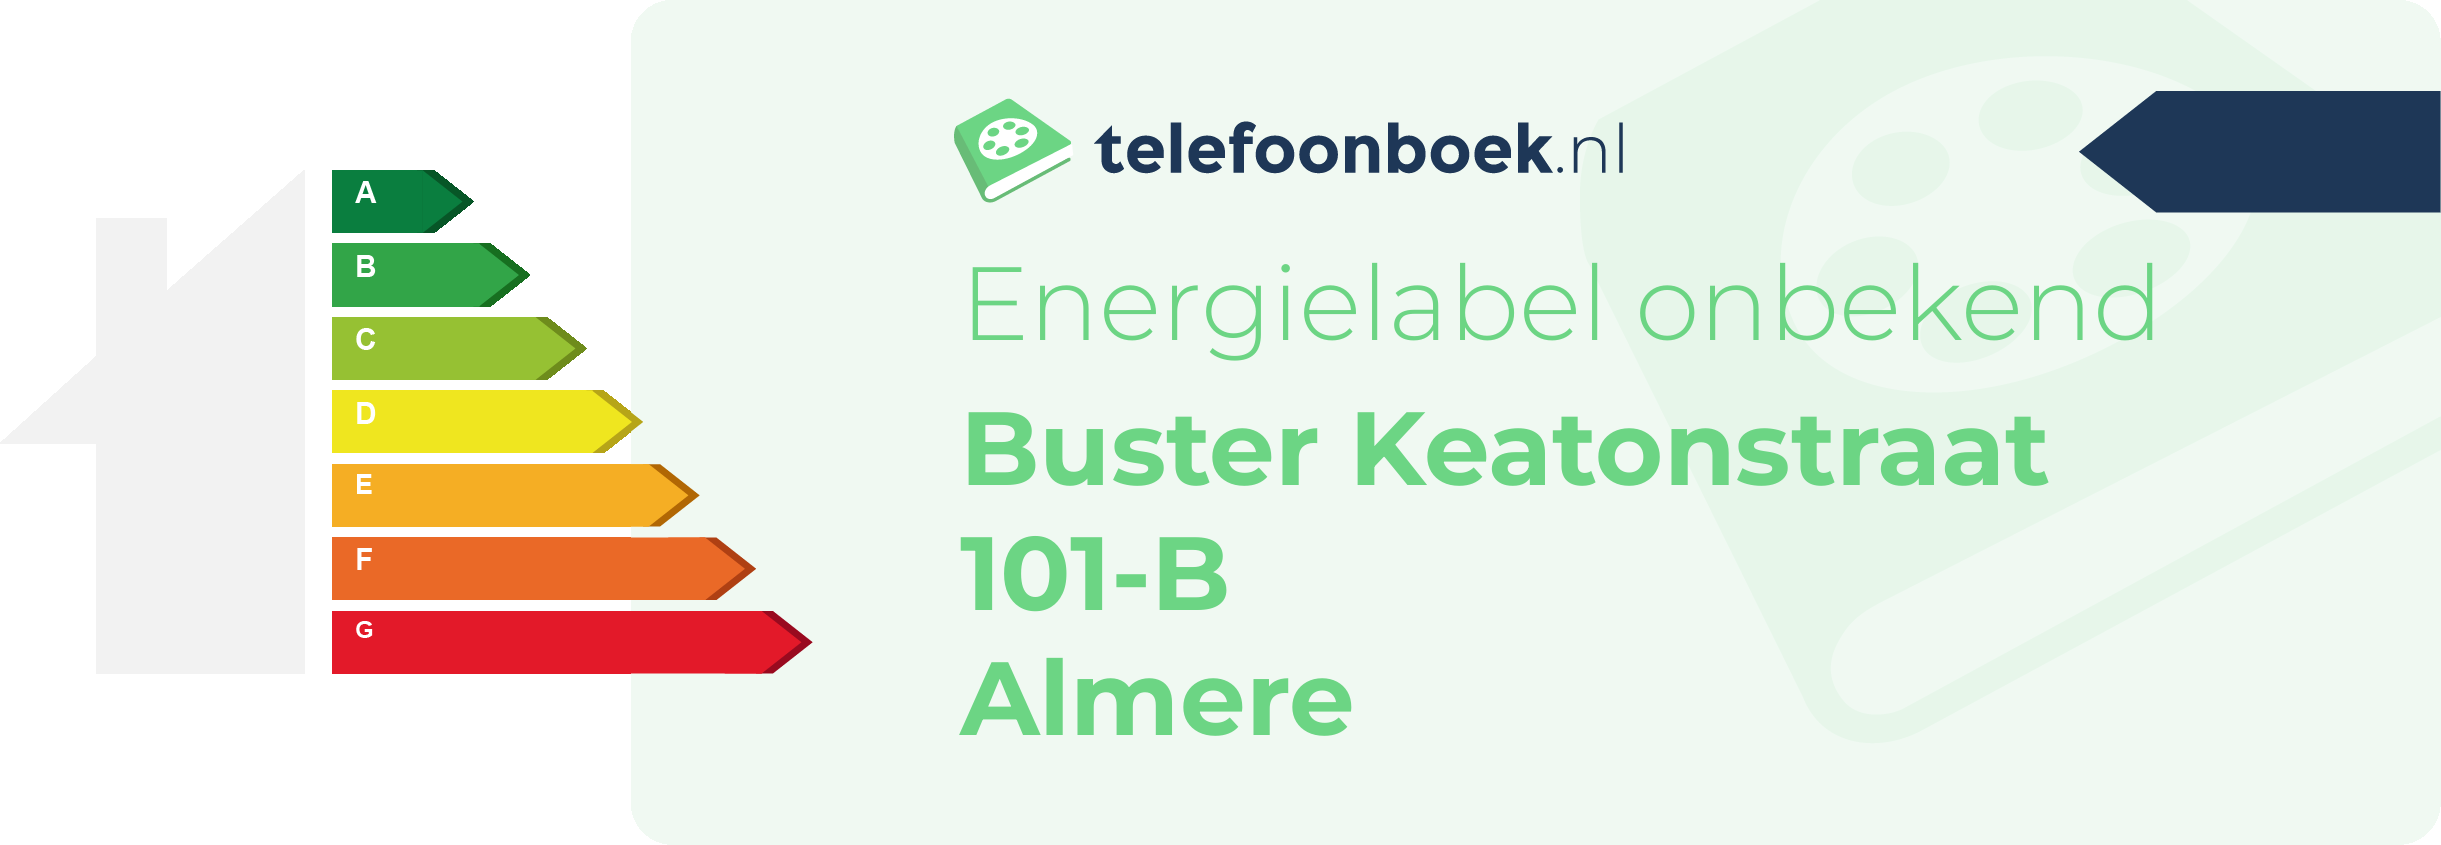 Energielabel Buster Keatonstraat 101-B Almere